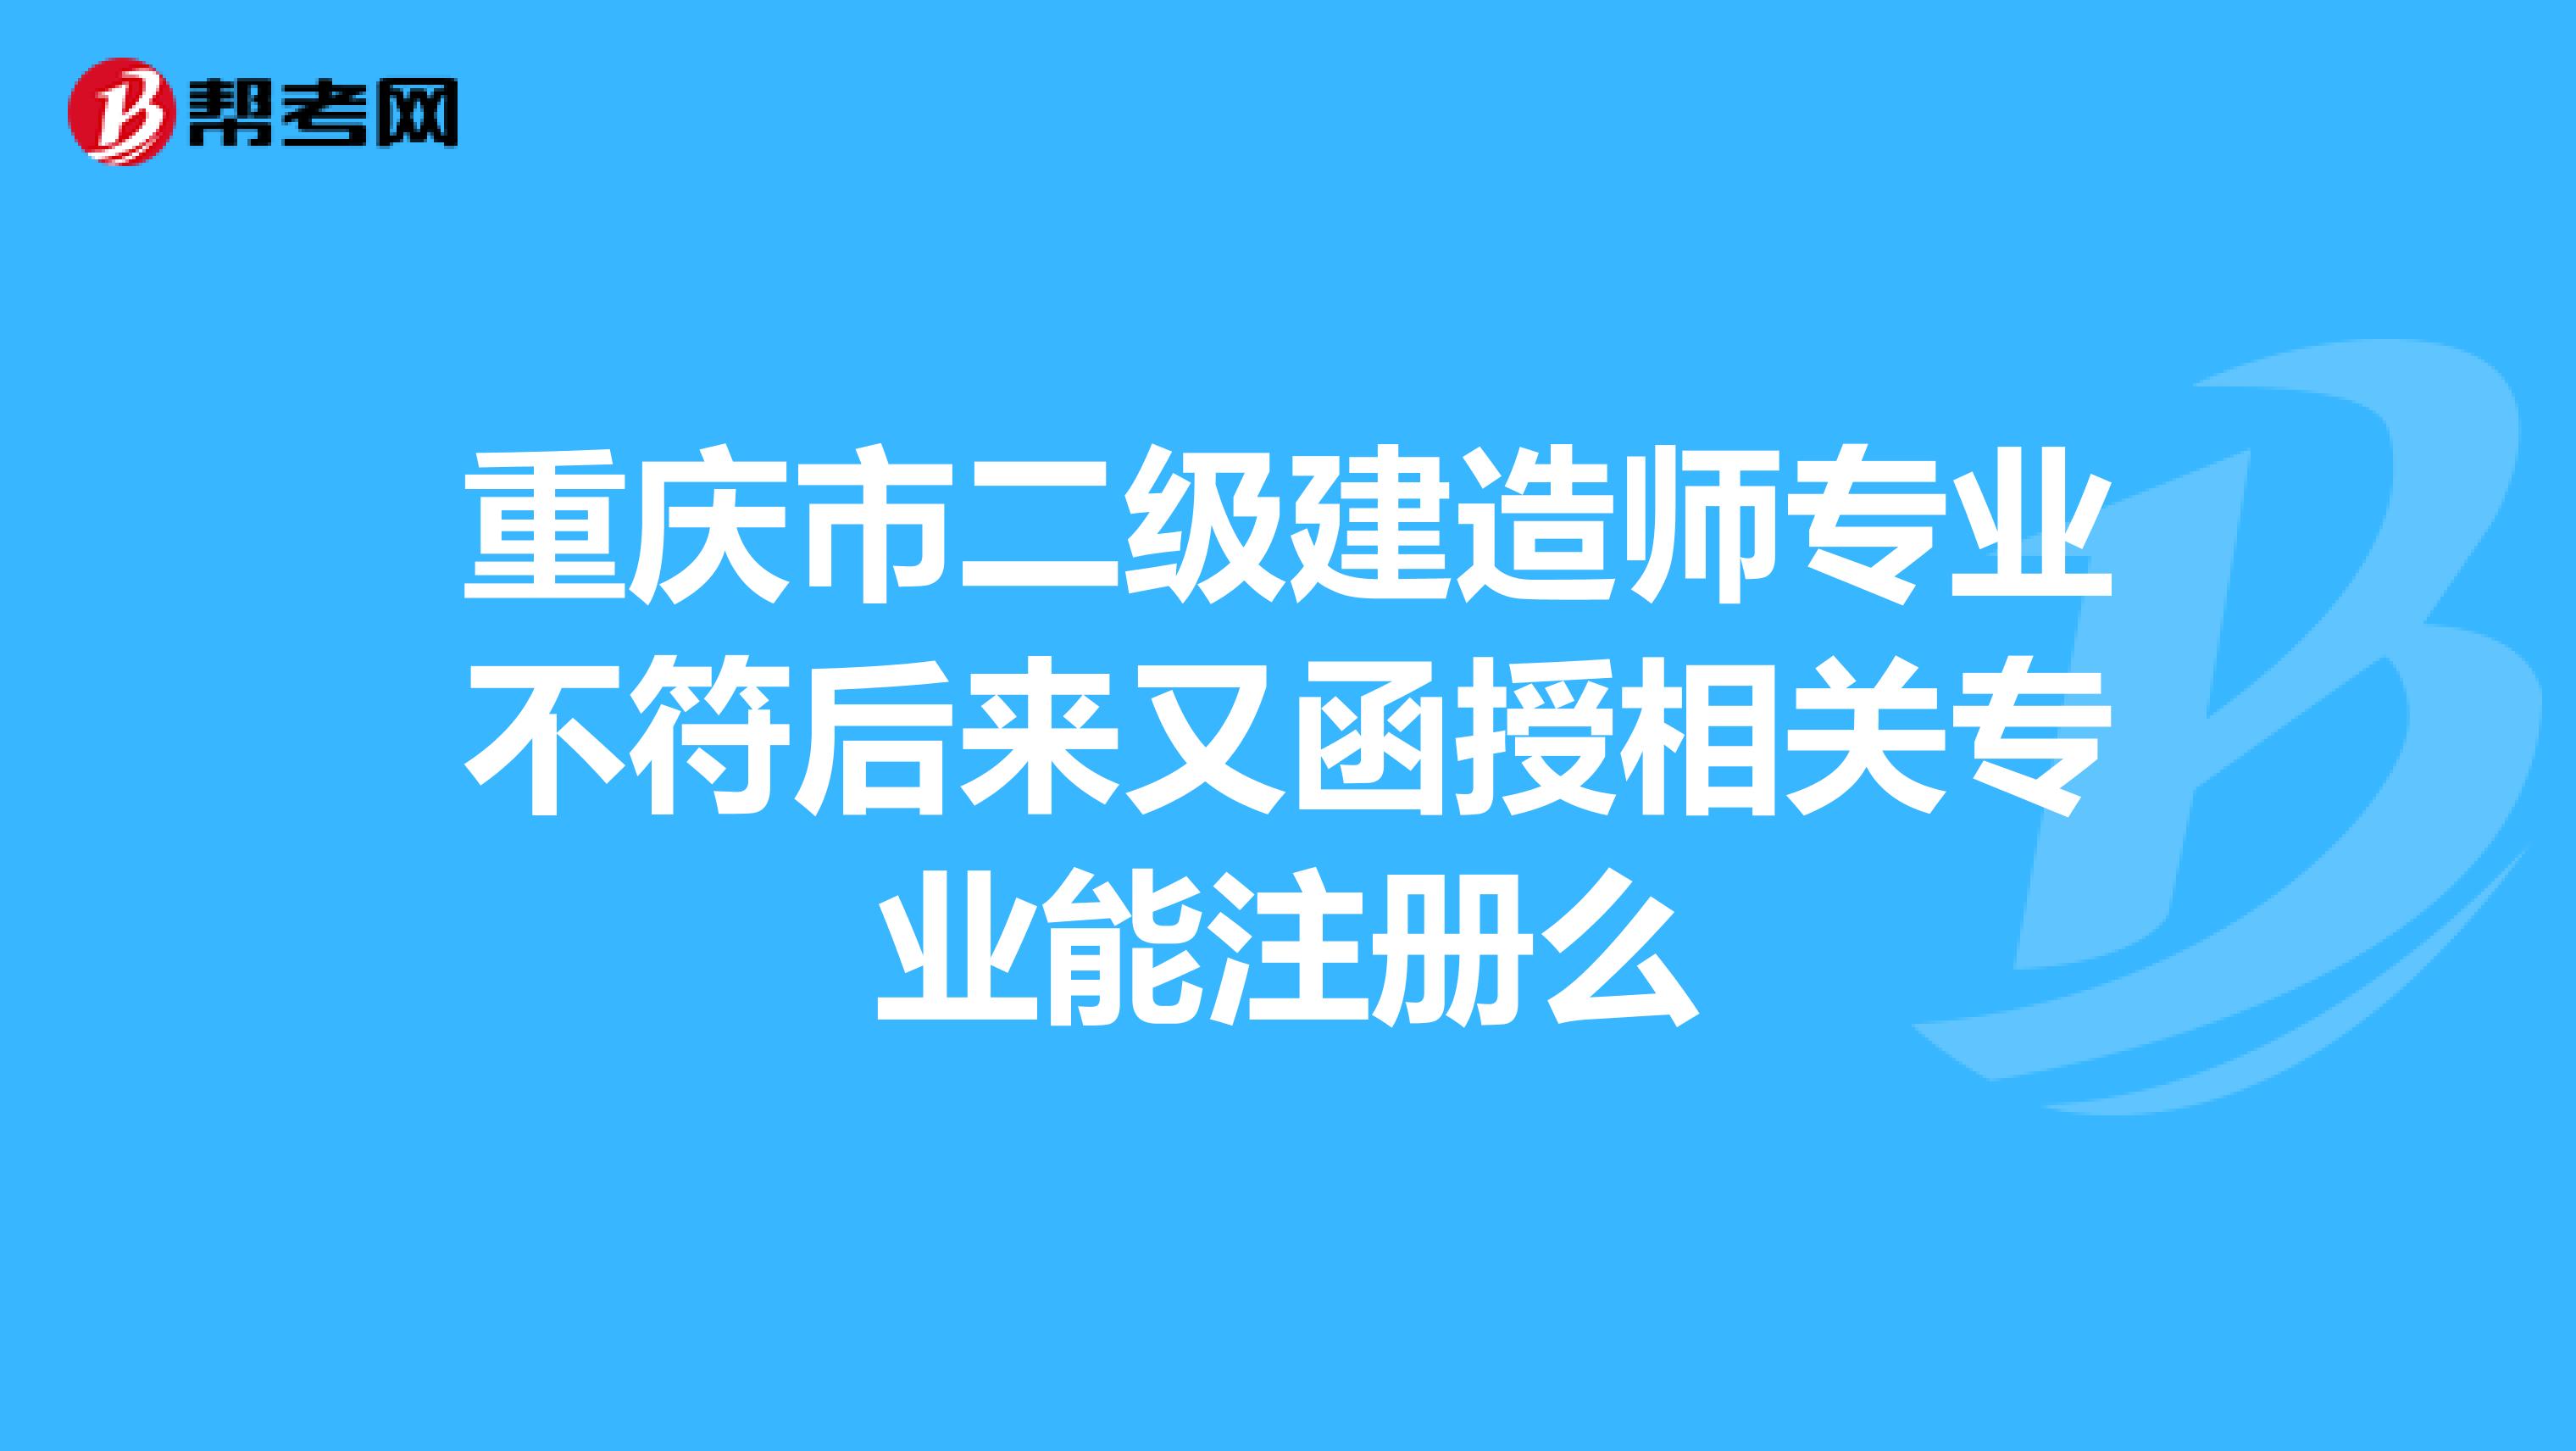 重庆市二级建造师专业不符后来又函授相关专业能注册么